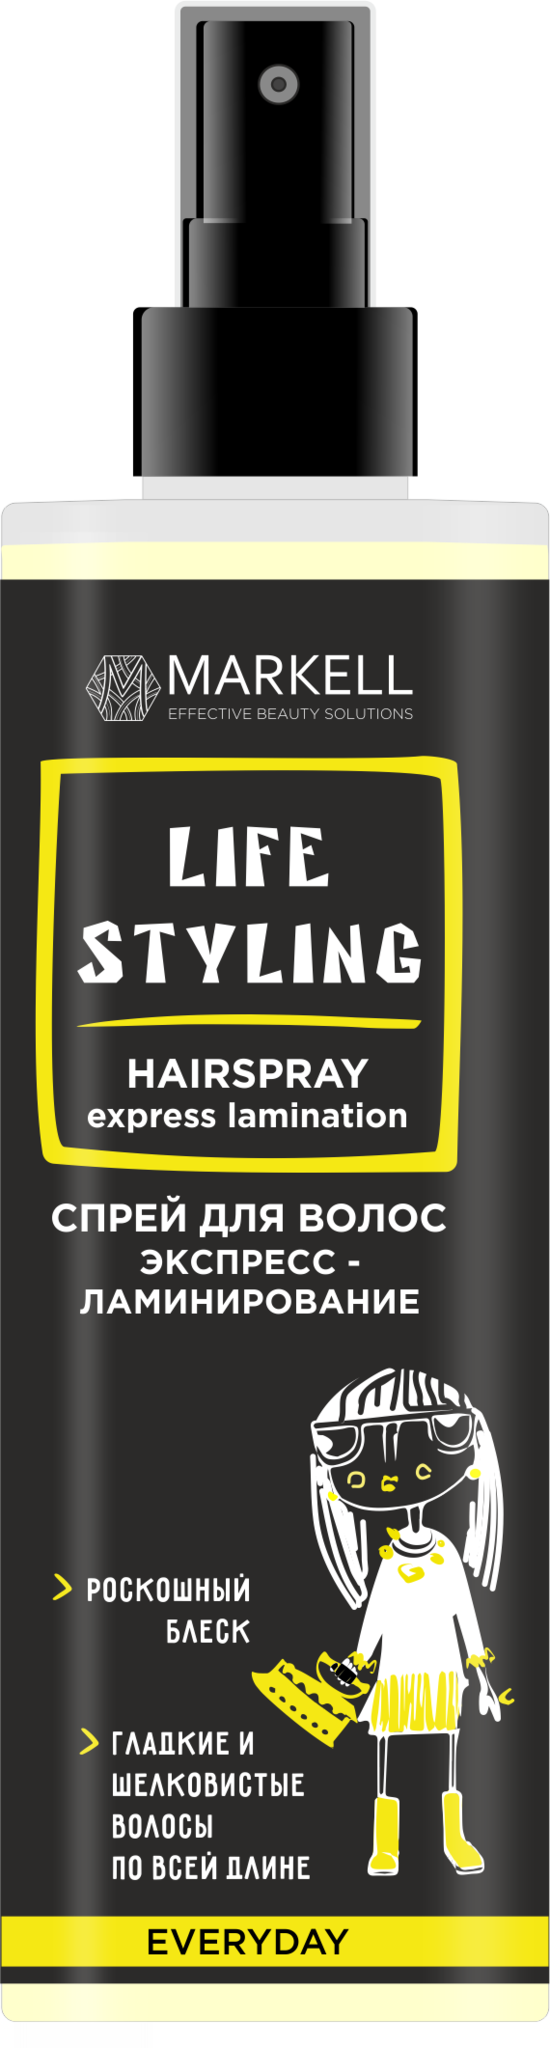 MARKELL Life Styling Спрей для волос Экспресс-ламинирование 195мл